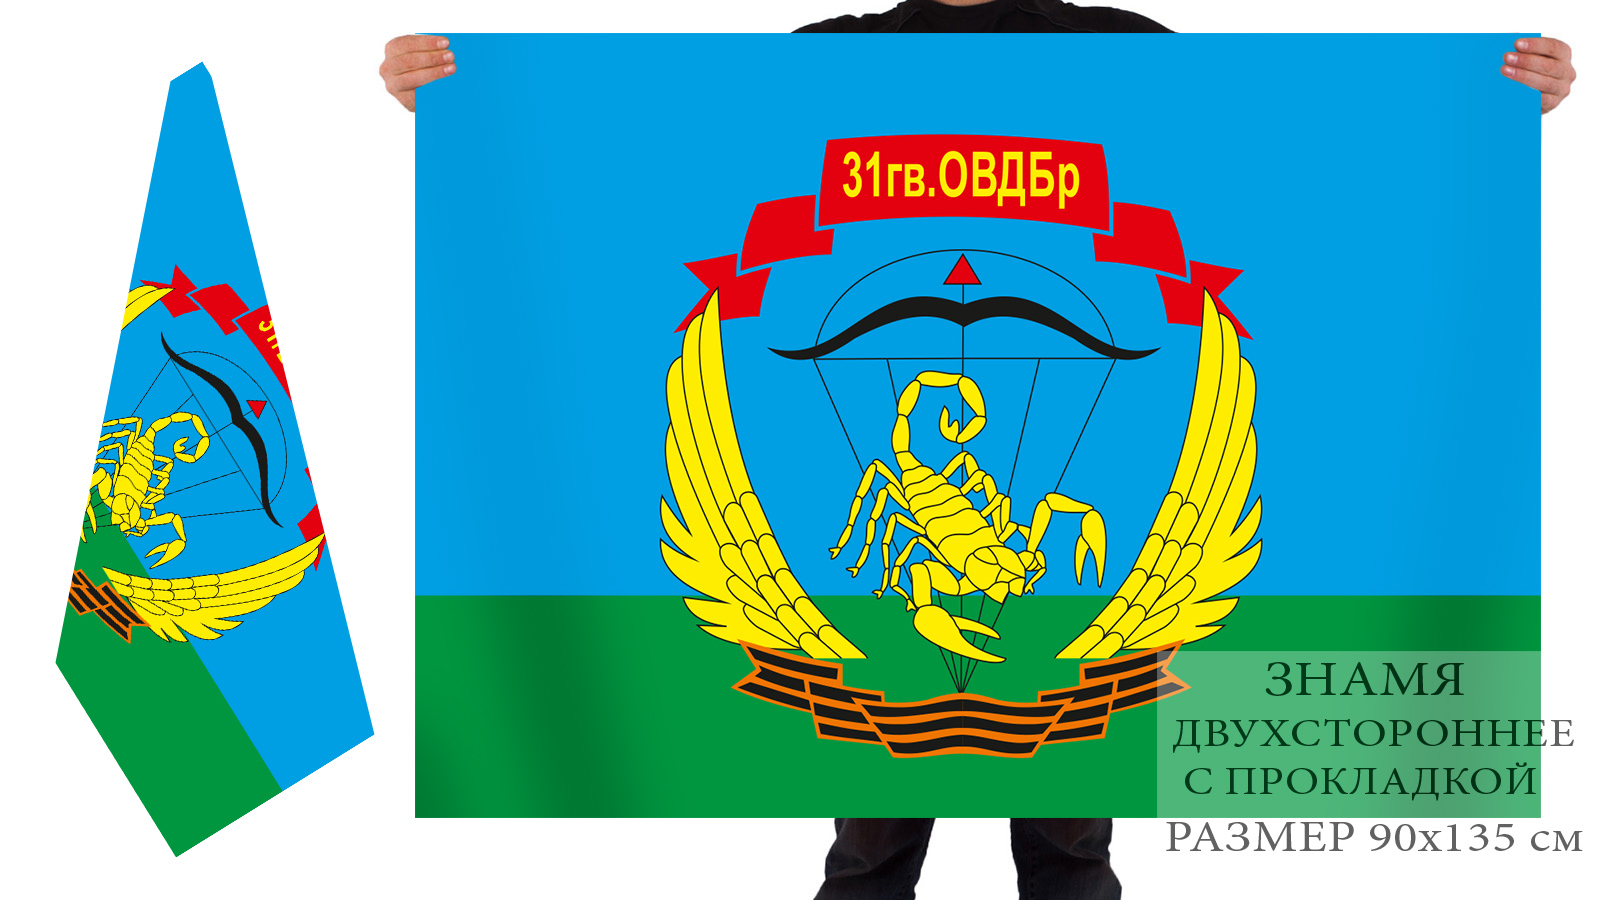 Двухсторонний флаг ВДВ «31-я отдельная гвардейская воздушно-десантная бригада» 